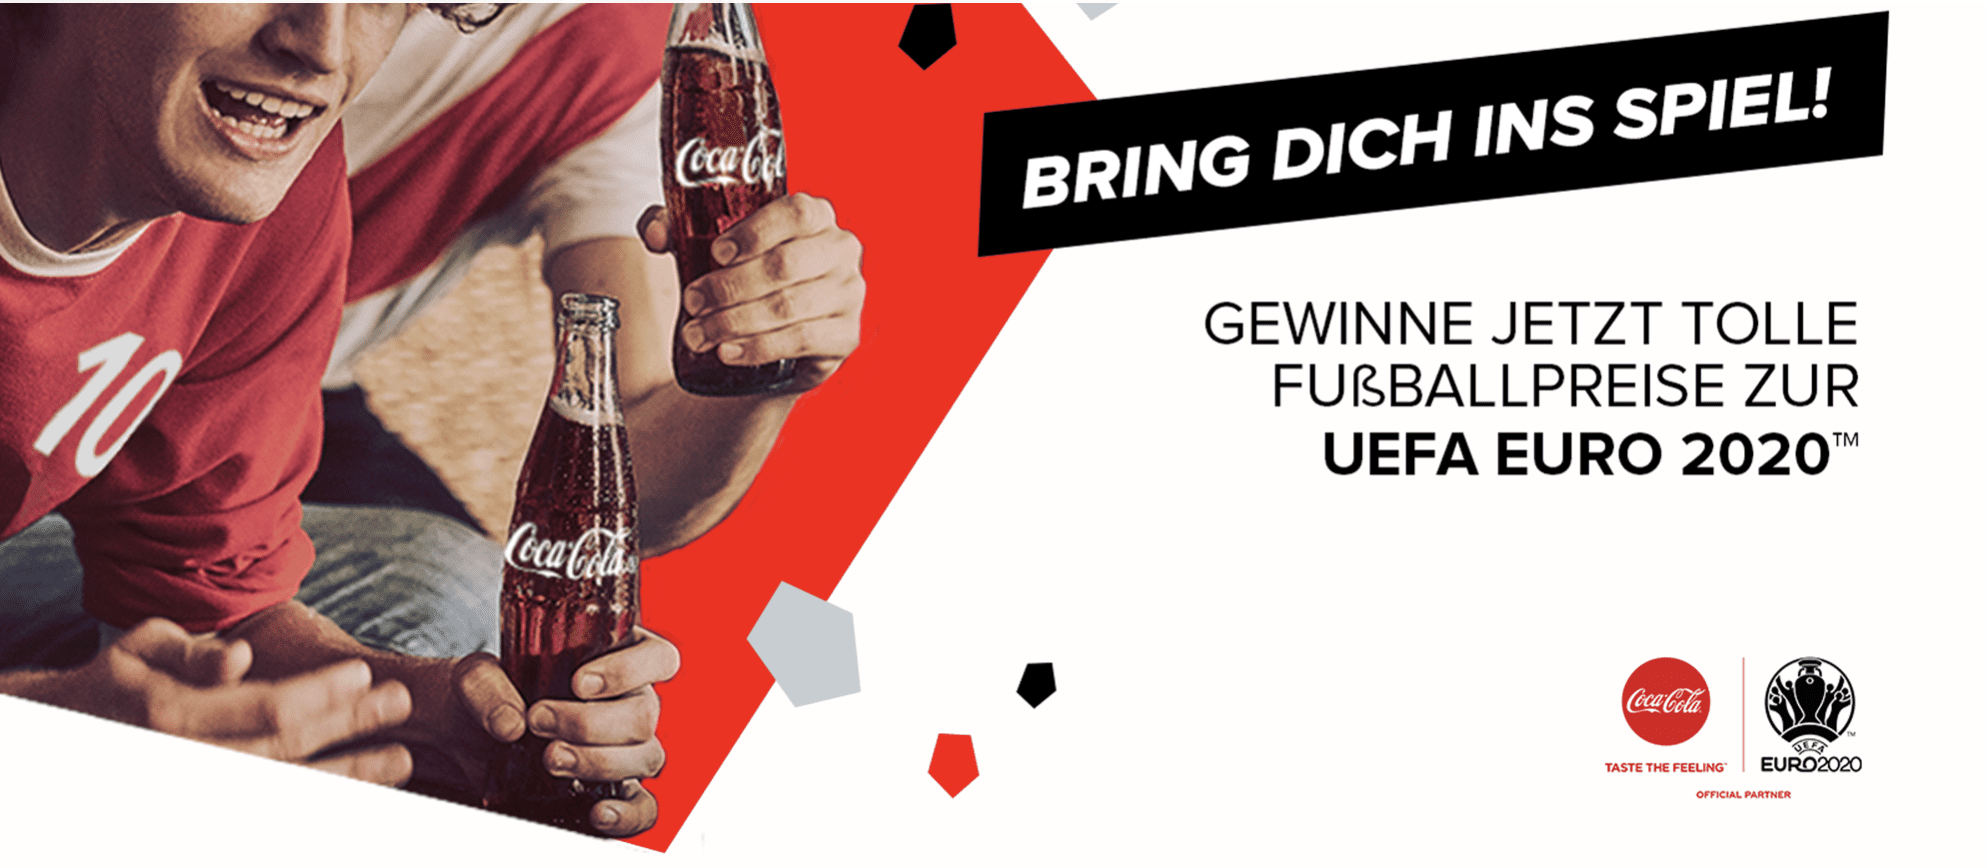 case_Coca-Cola: Fußball-Preise zur UEFA Euro 2020 gewinnen